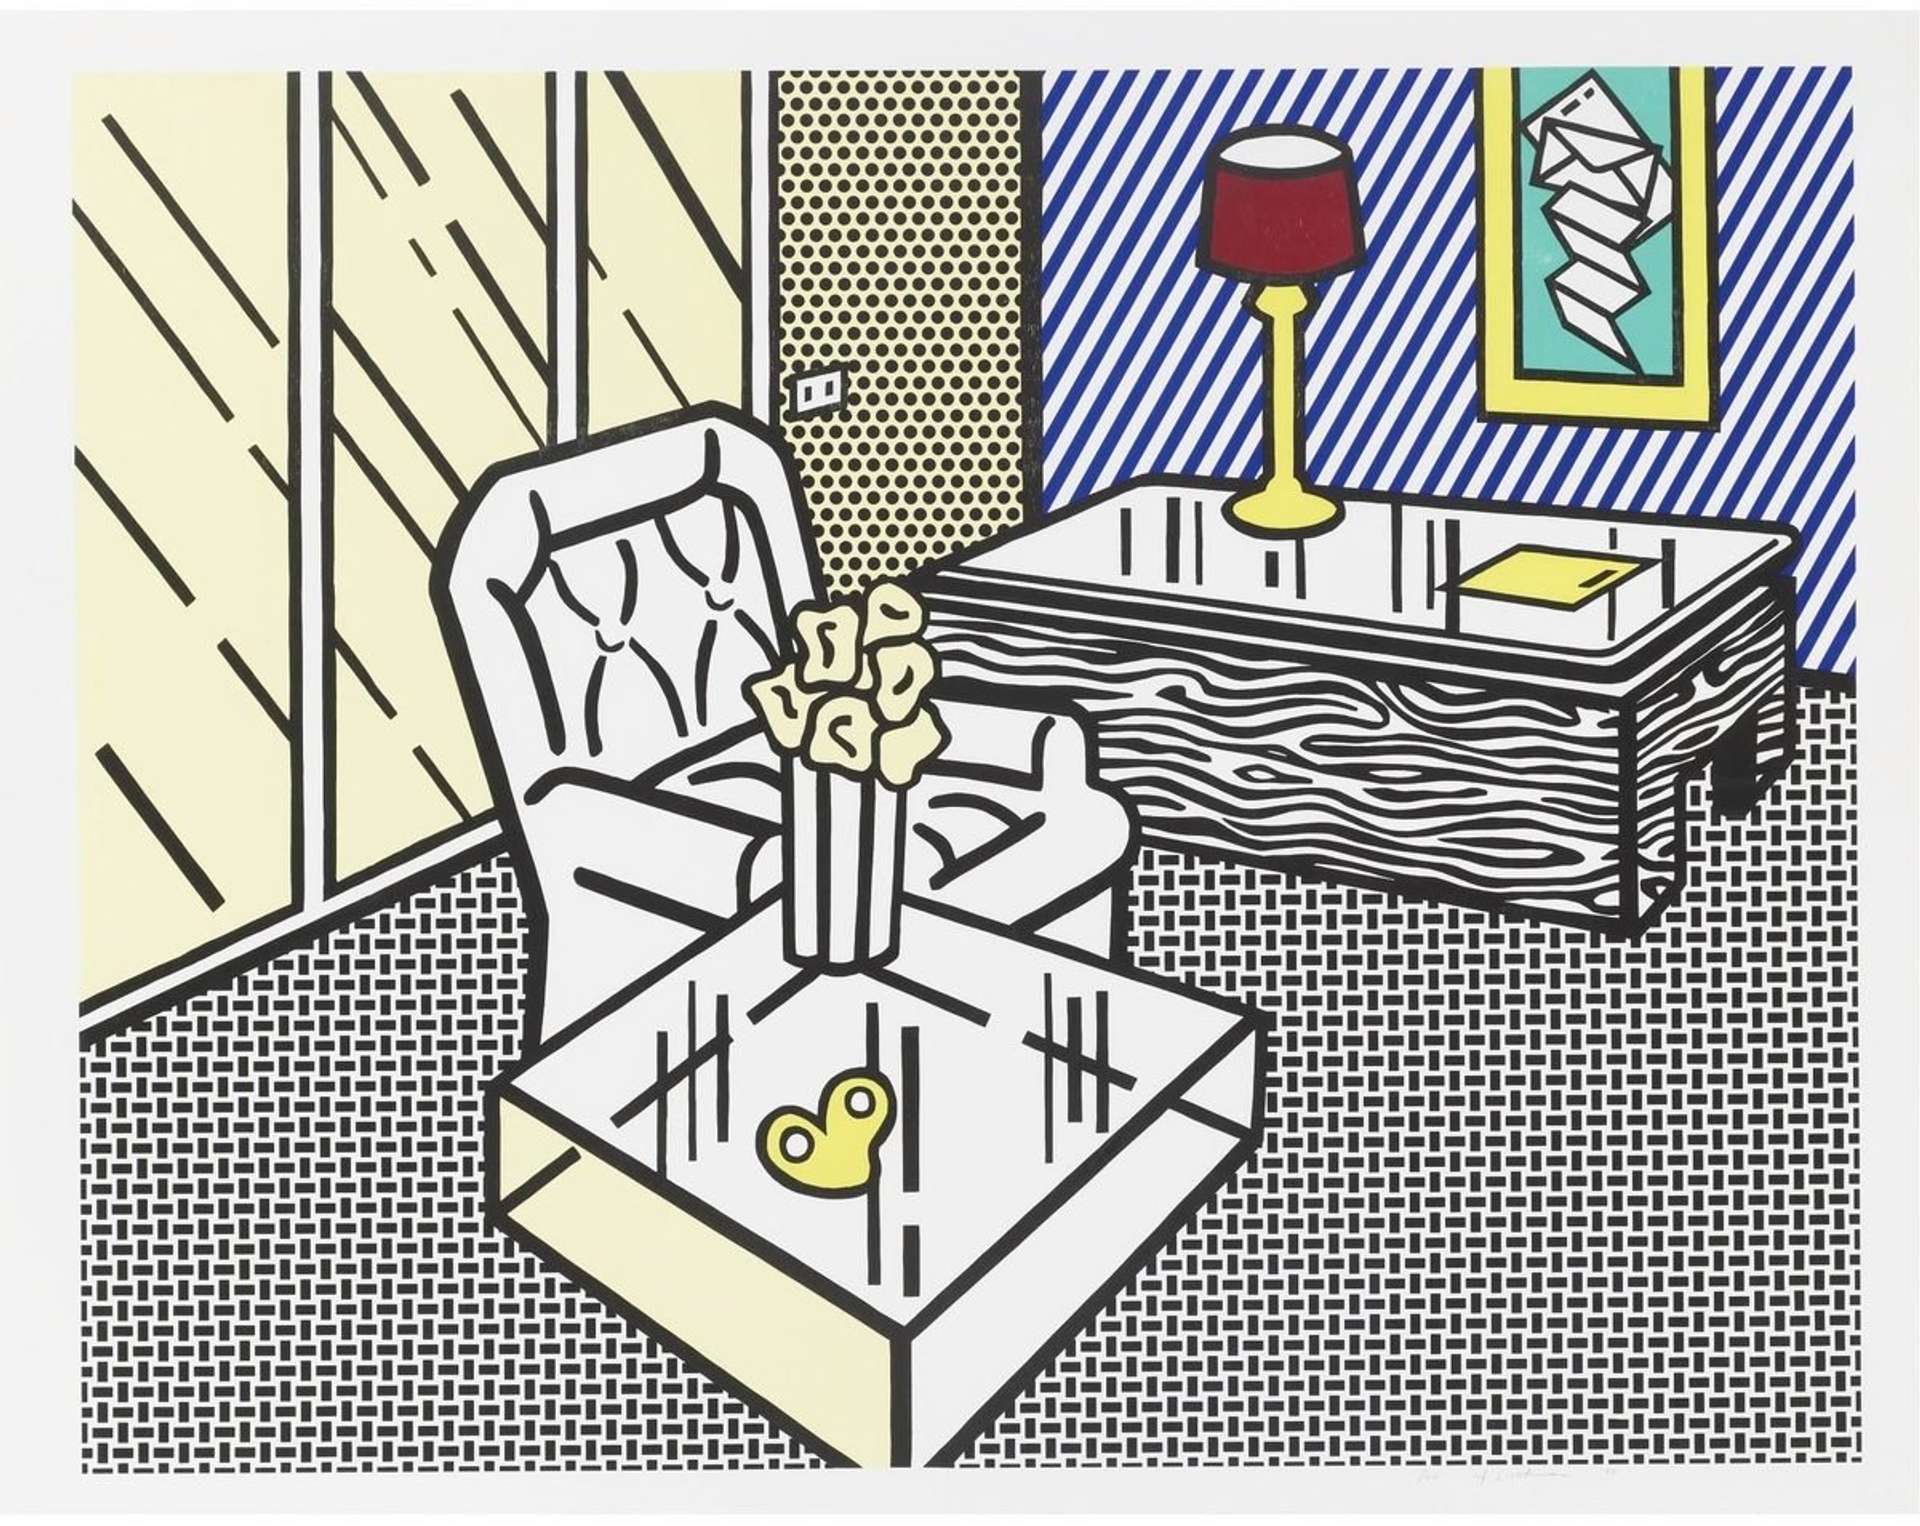 The Den by Roy Lichtenstein